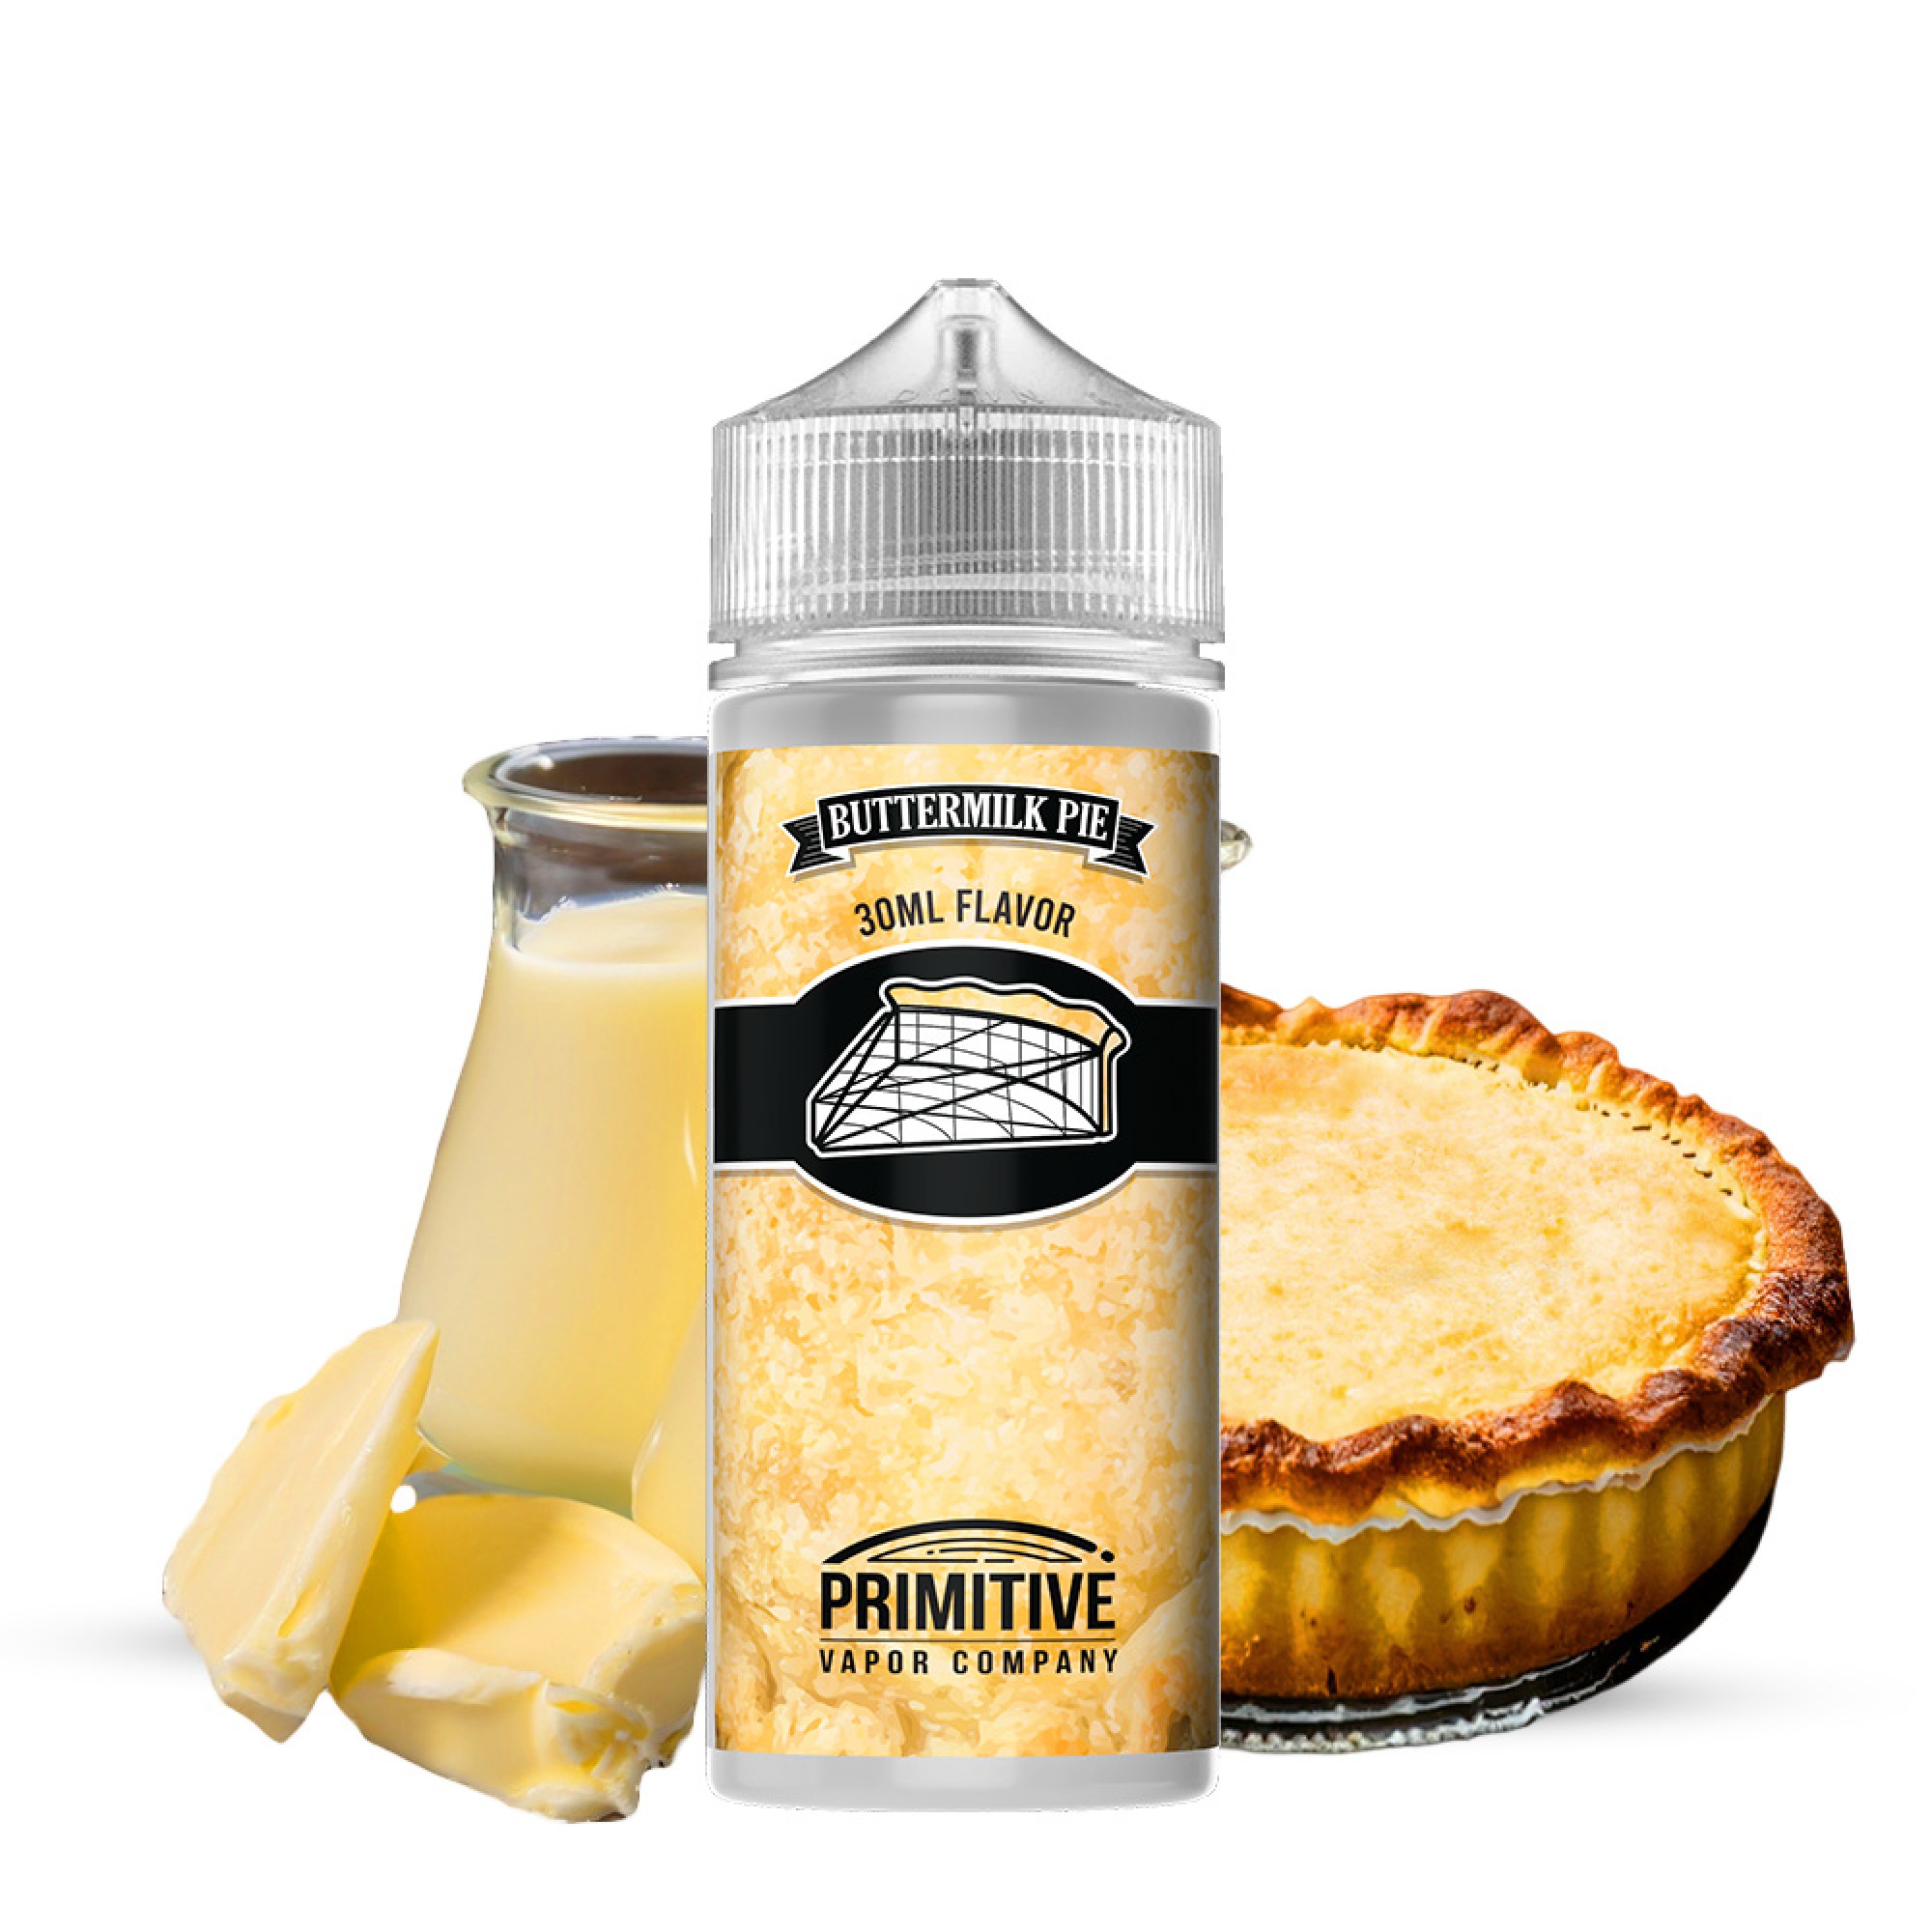 OPMH Flavor Primitive Buttermilk Pie 120